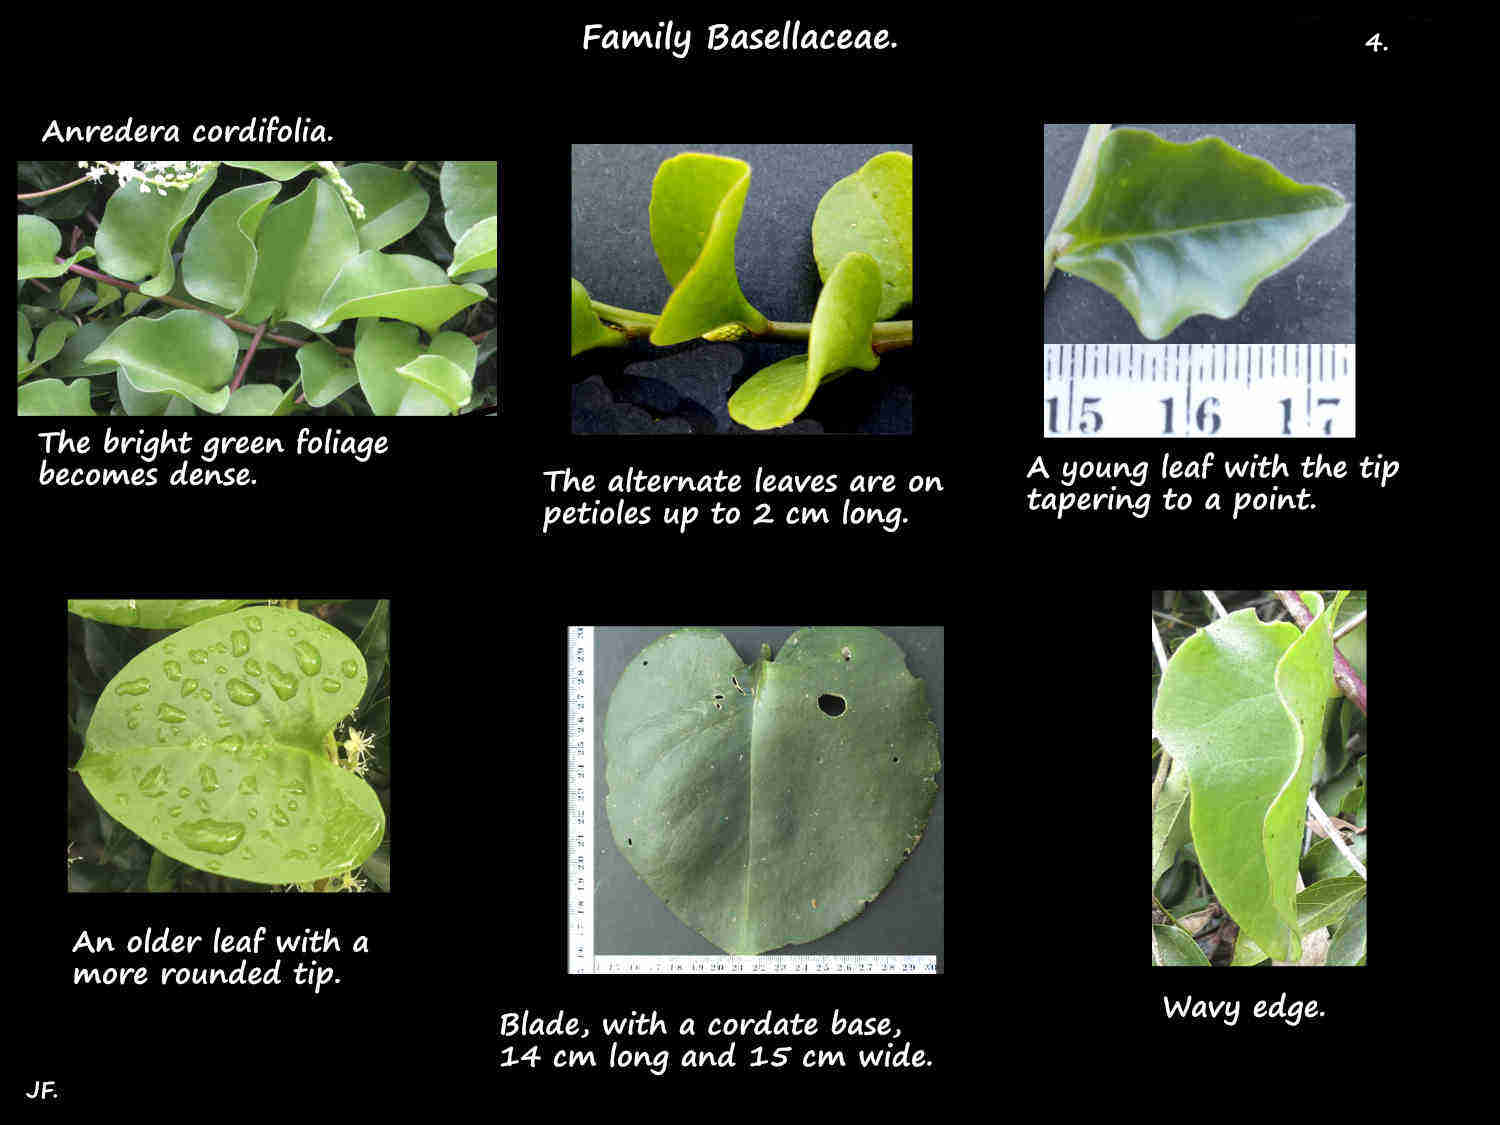 4 Anredera cordifolia leaves